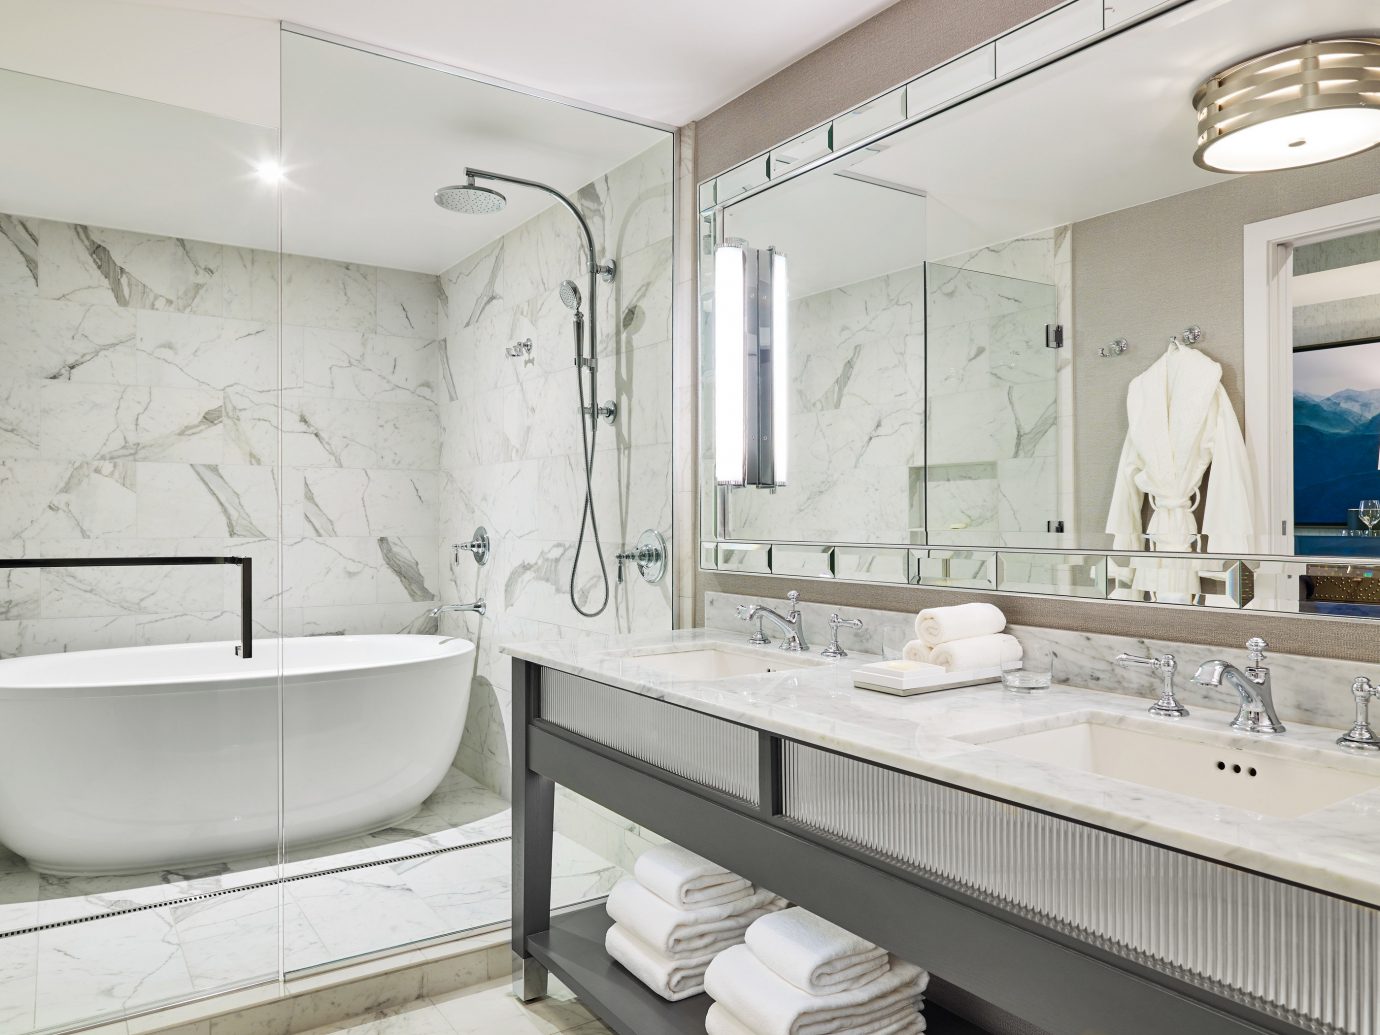 Boutique Hotels Hotels Outdoors + Adventure Winter bathroom indoor wall mirror sink room interior design tap product design floor plumbing fixture interior designer tub Bath bathtub